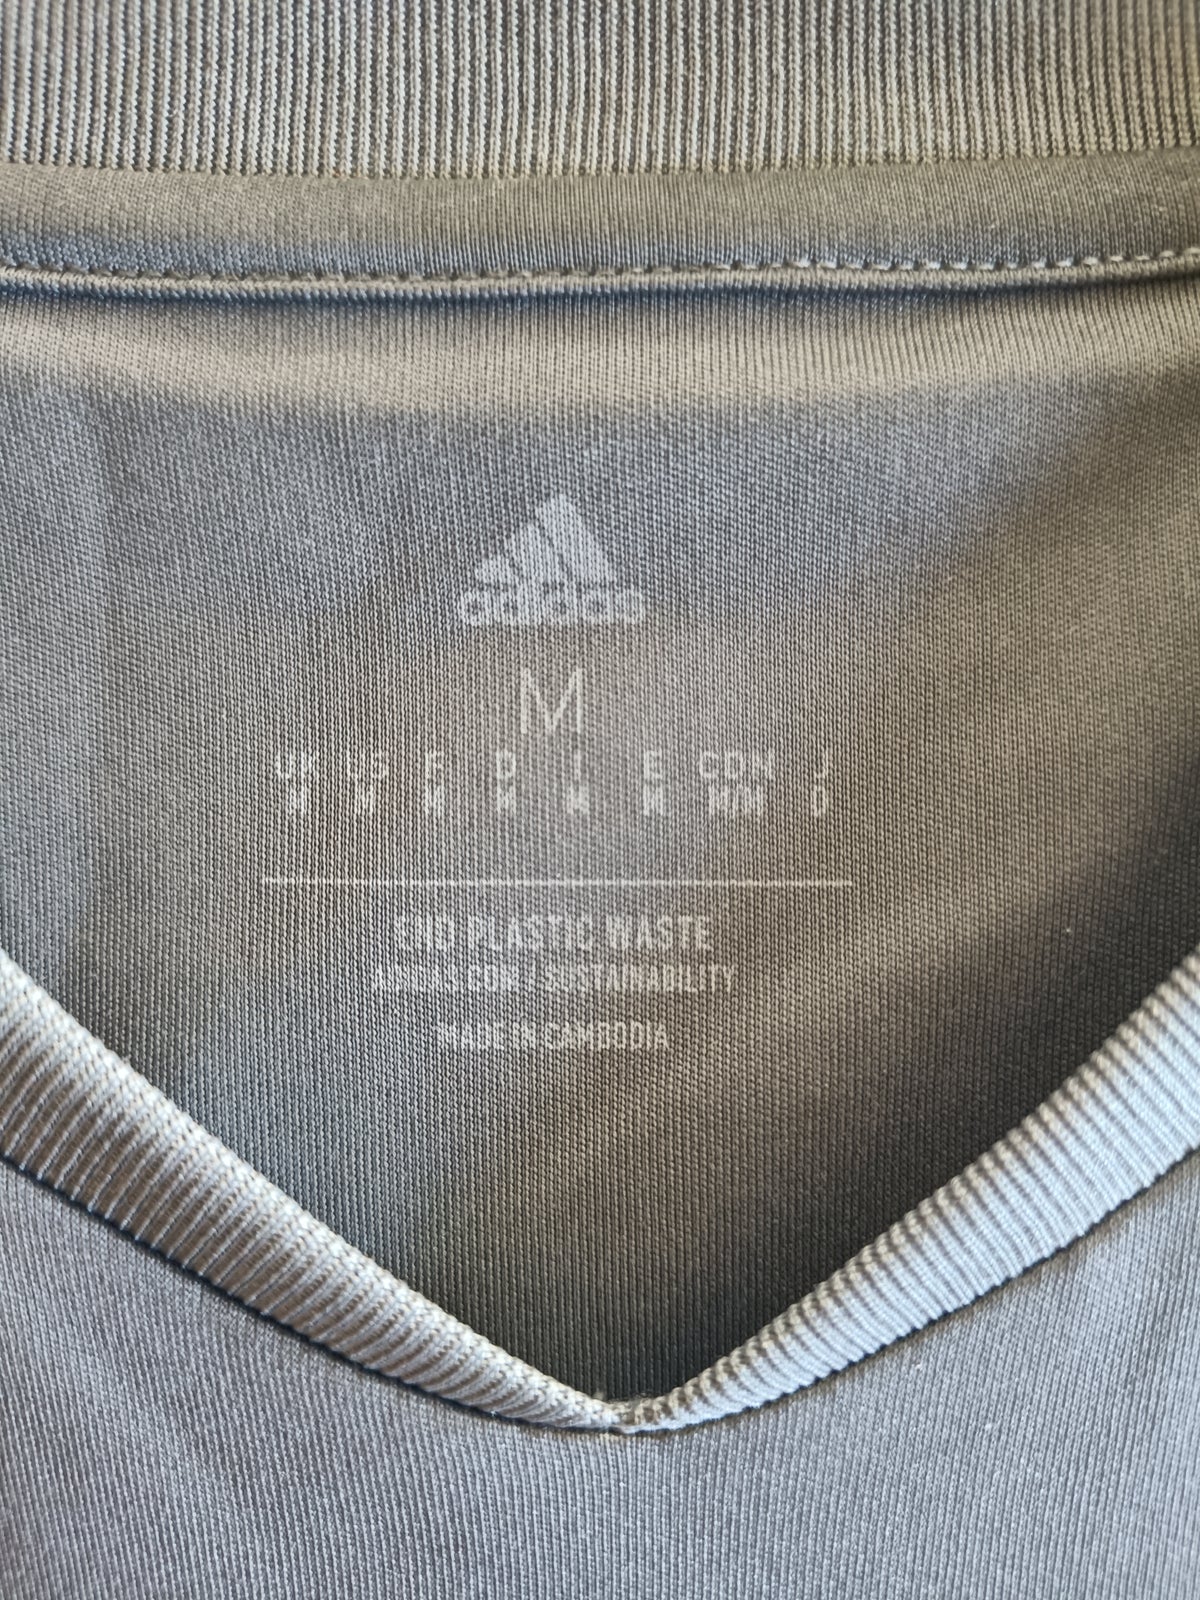 Trøje, Adidas, str. Medium